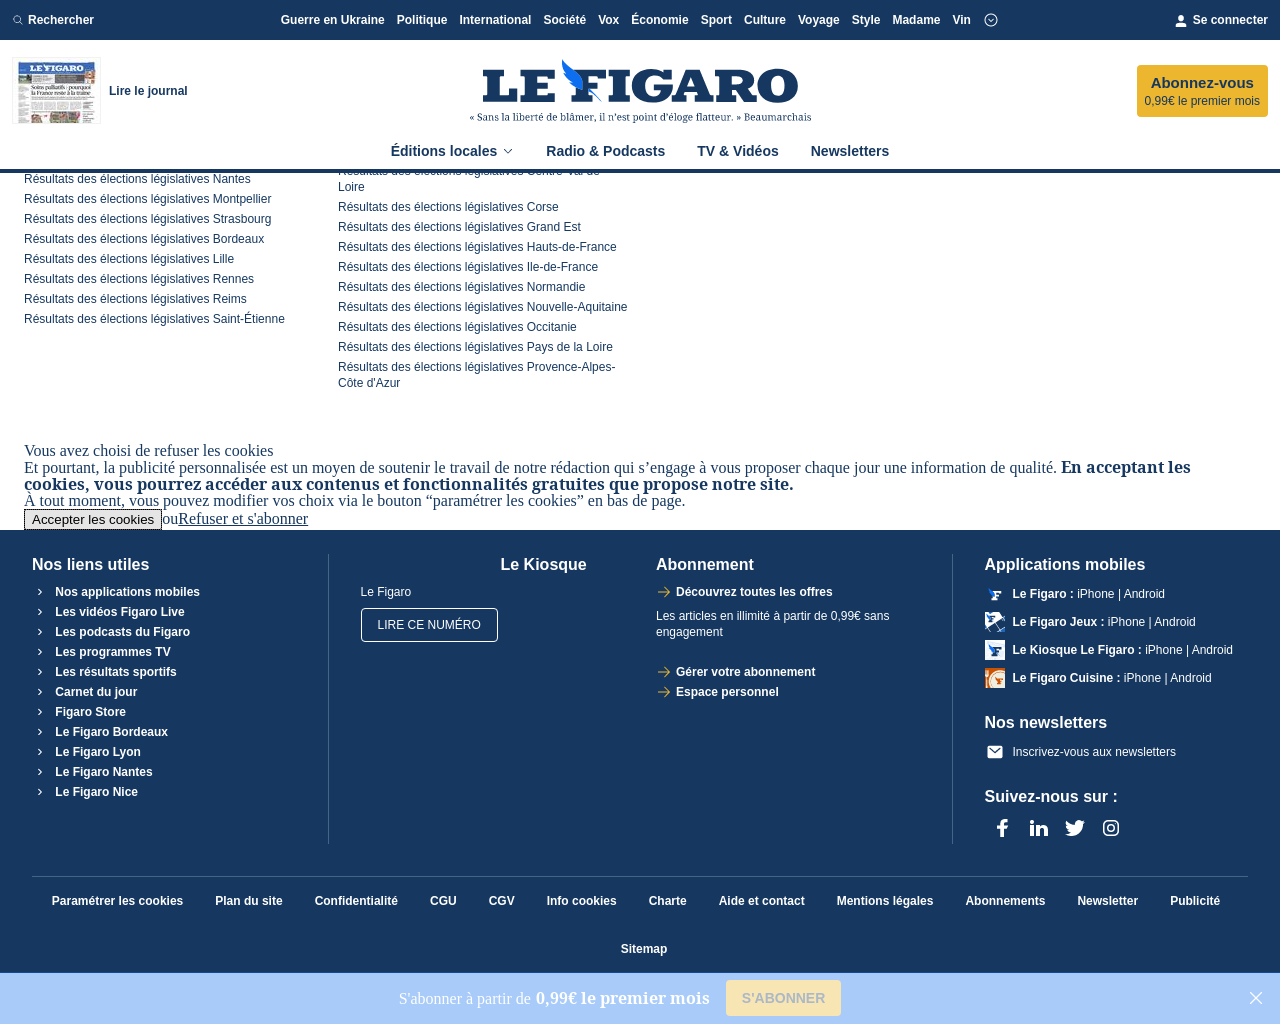 www.lefigaro.fr